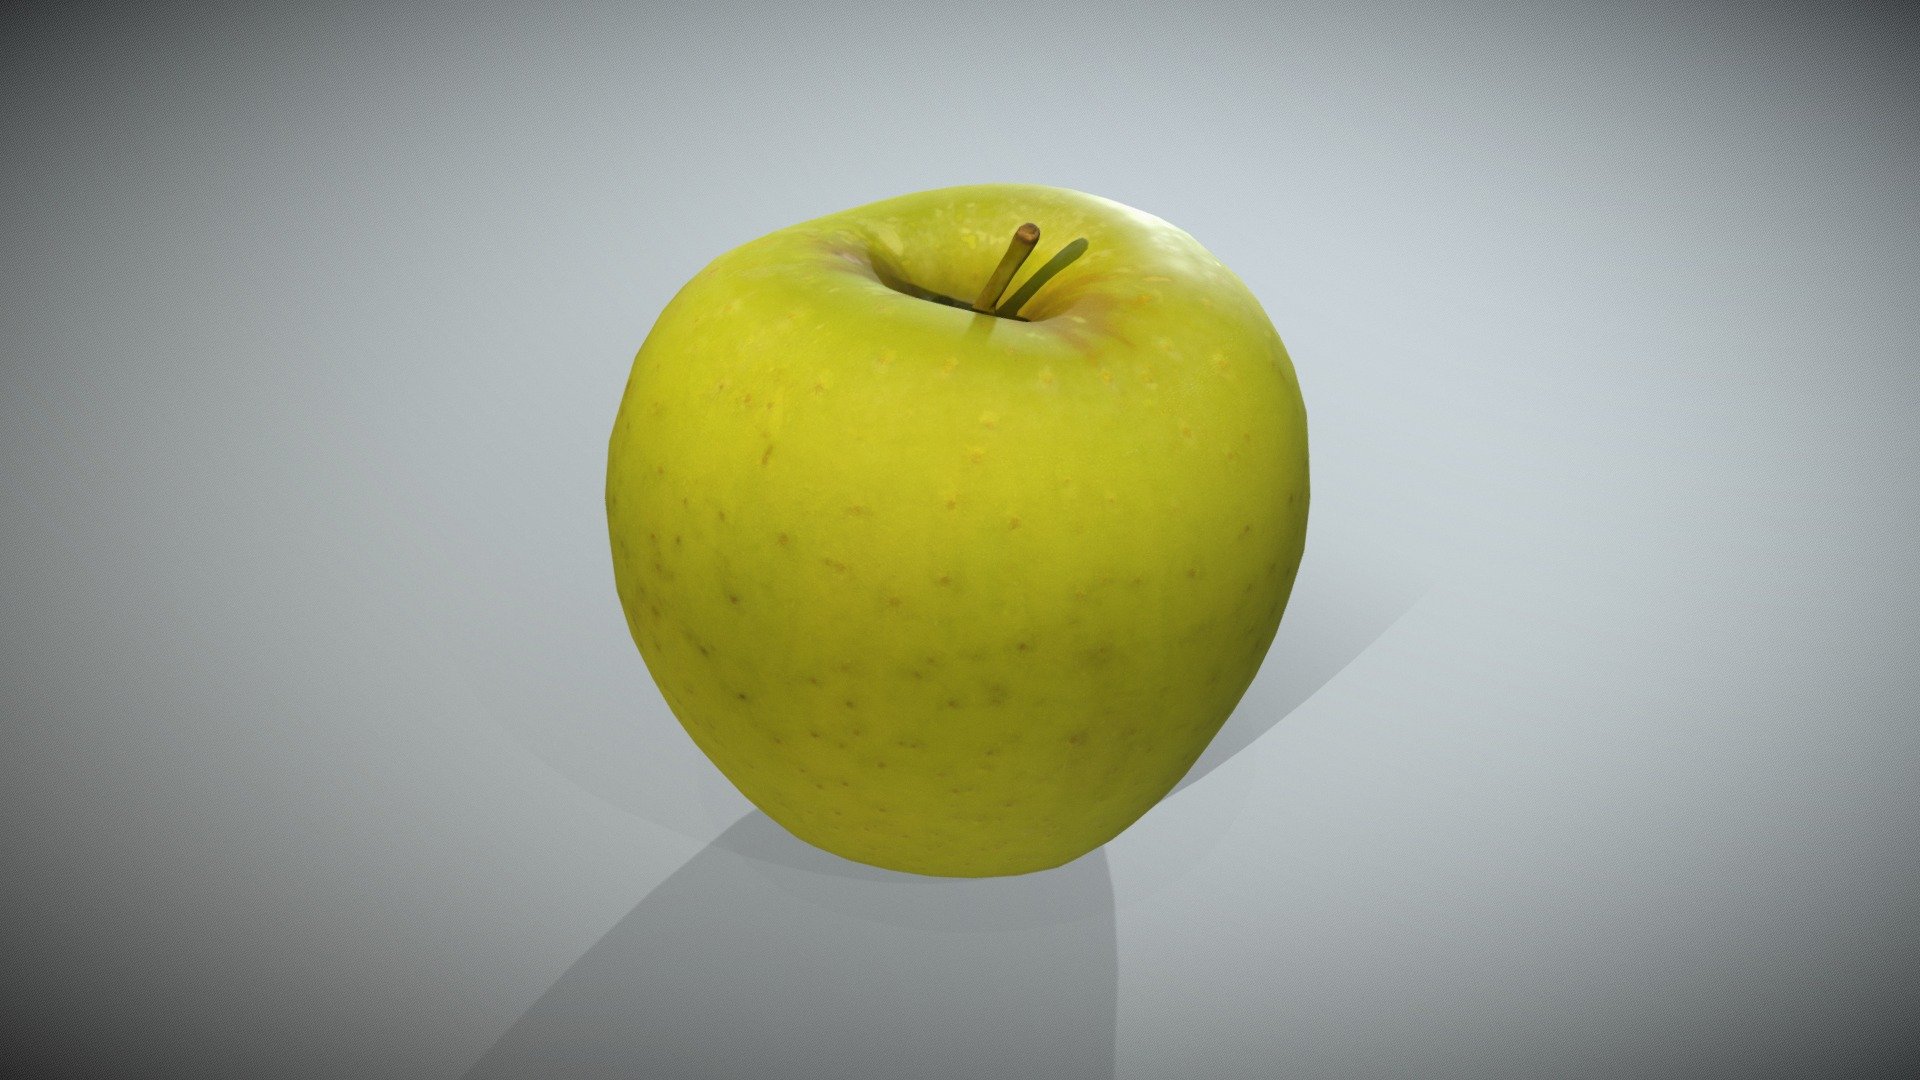 Blender 3D 3.6.0 for apple download free